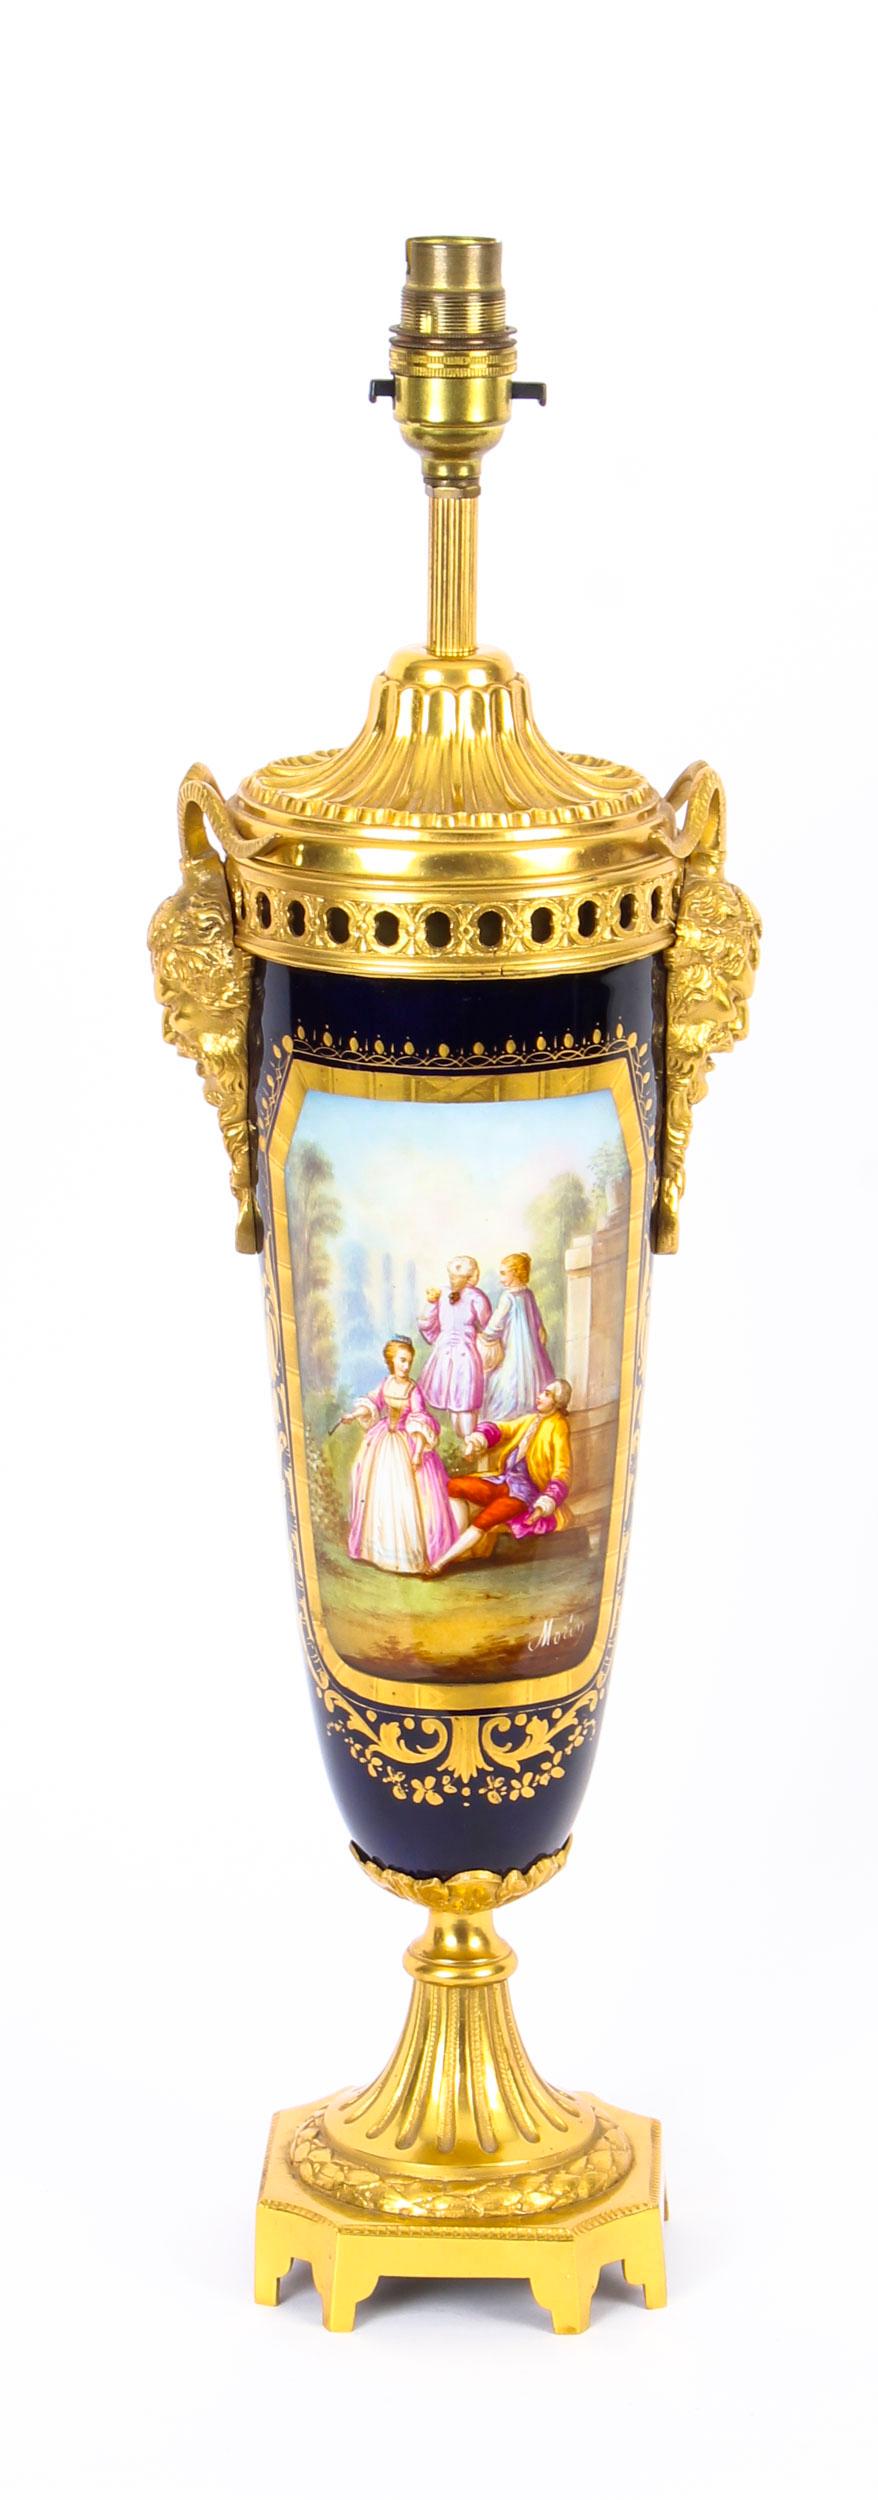 Antique Bleu Royale Sèvres Porcelain Ormolu Table Lamp, 19th Century For Sale 6